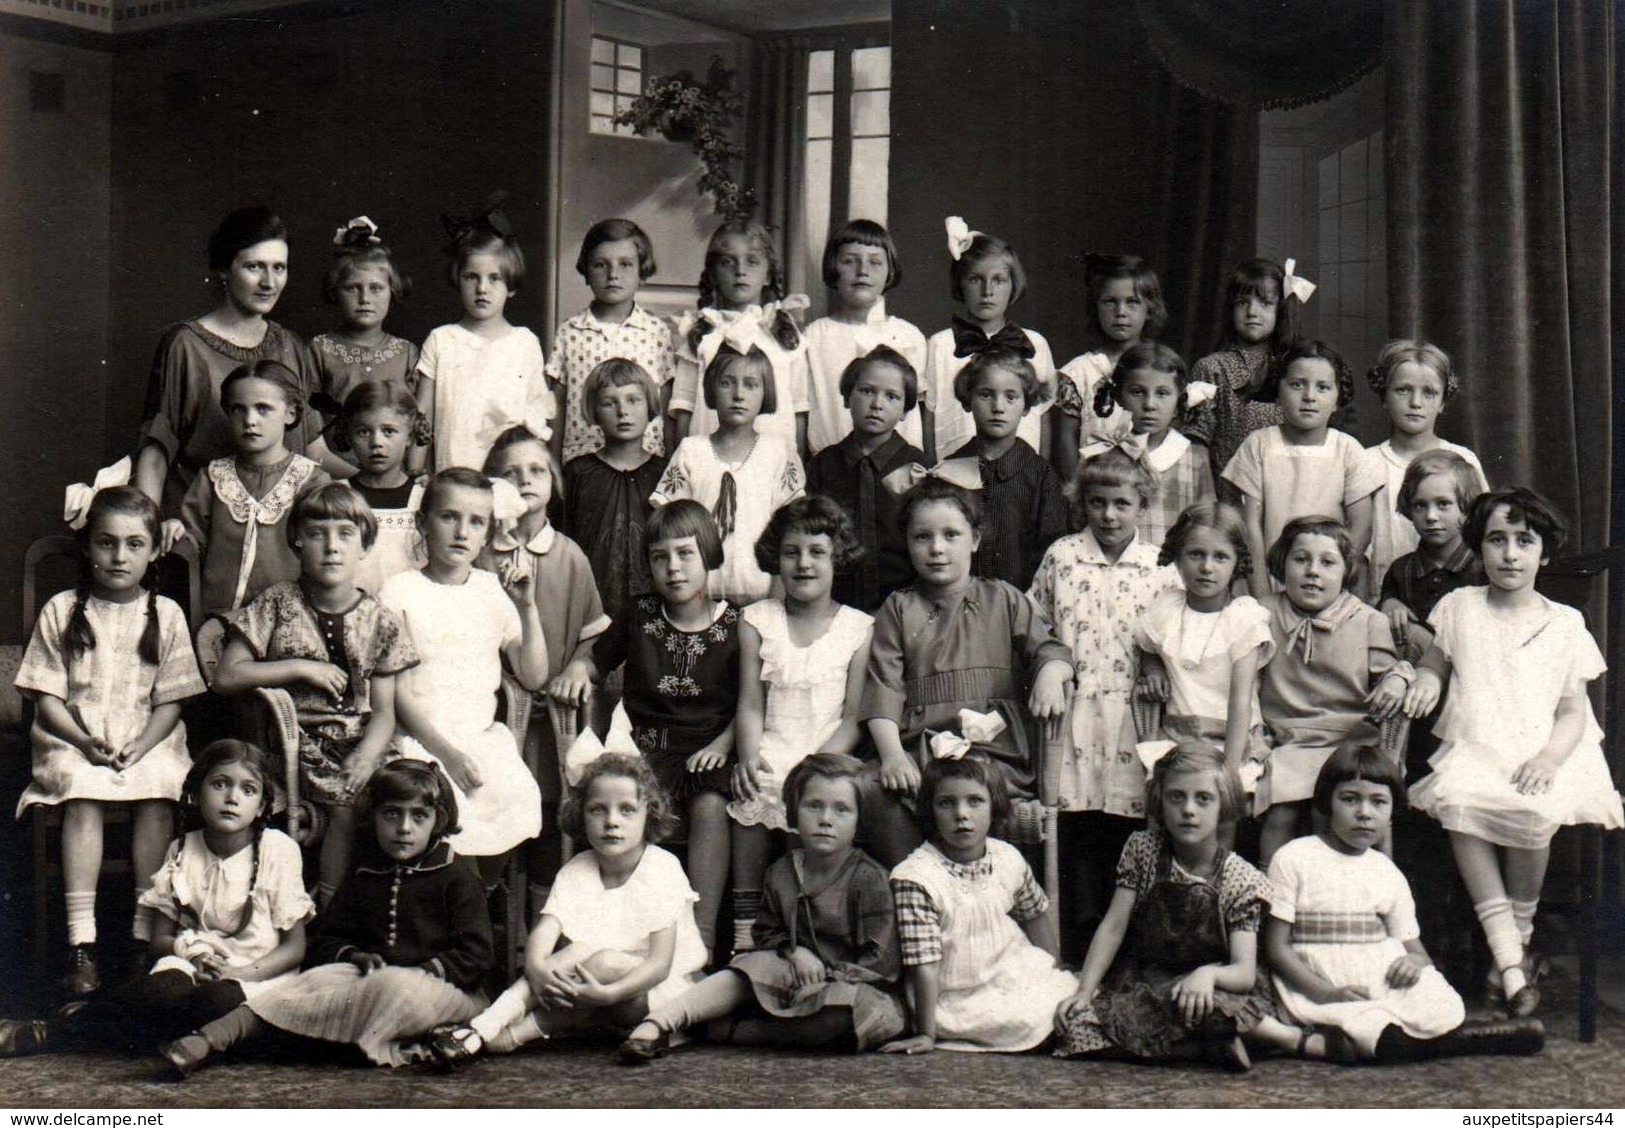 Tirage Photo Albuminé Cartonné Originale Scolaire Ecole De Fille 1910/20 - Noms & Prénoms Par Paul Härth D'Offenburg - Personnes Identifiées